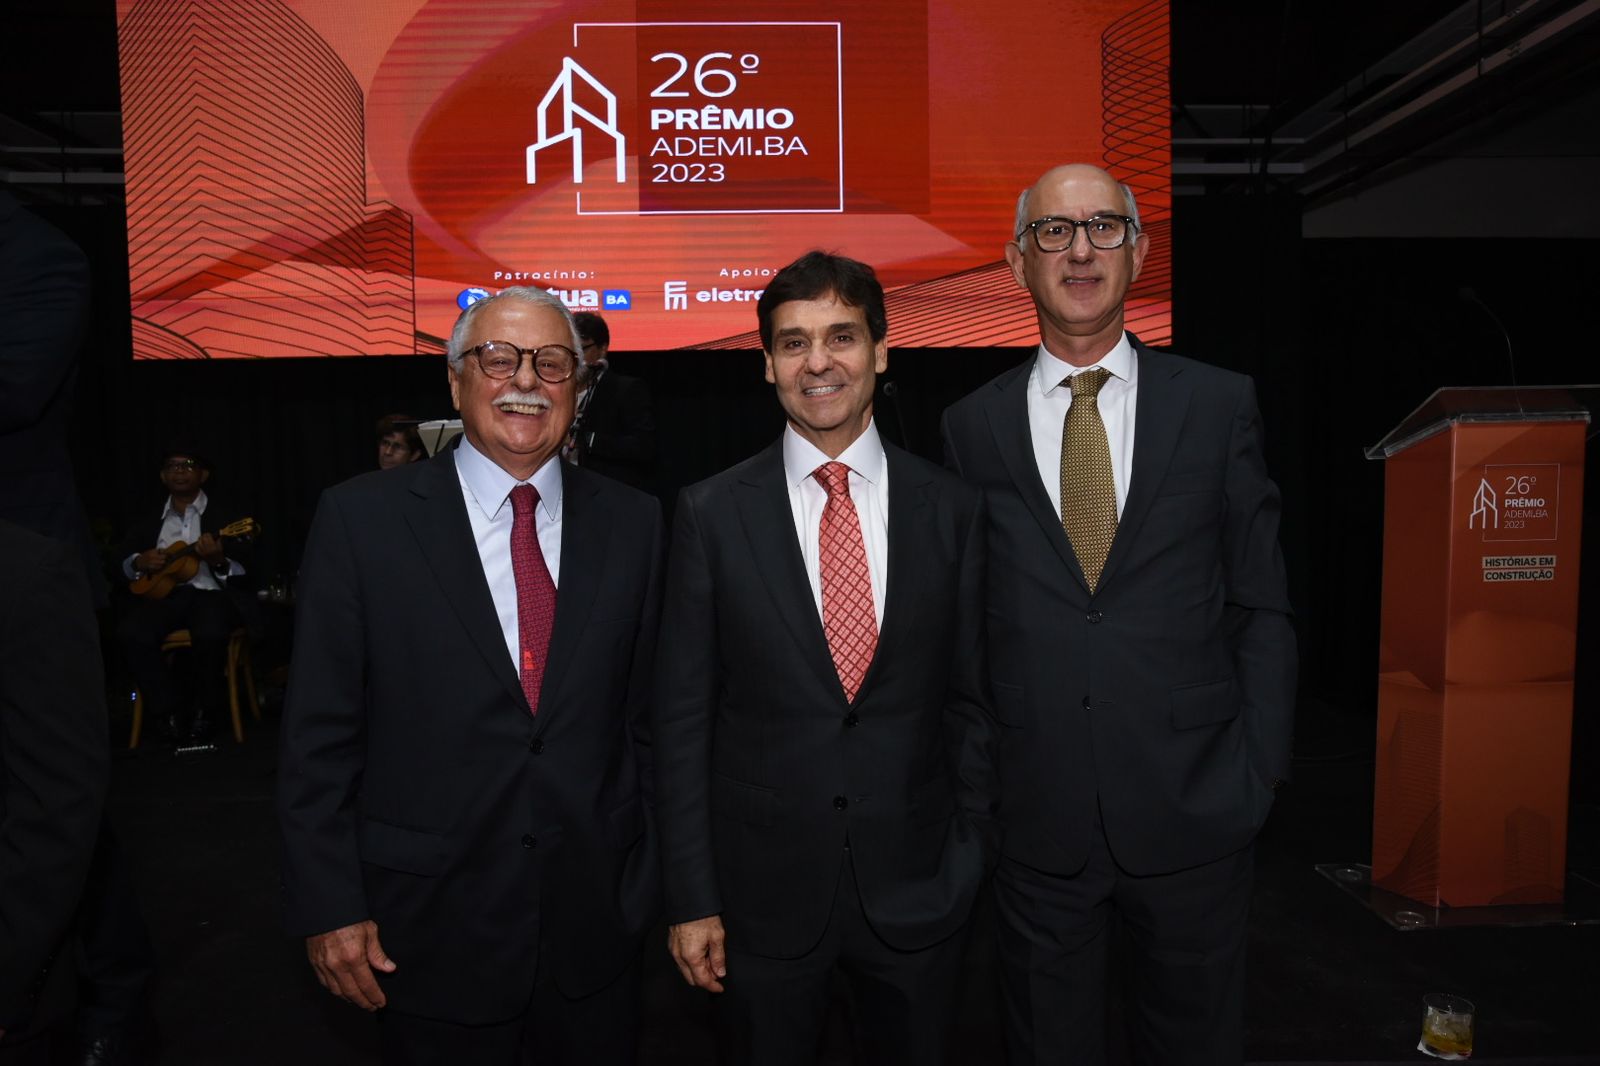  Mário Gordilho, Cláudio Cunha e André Teixeira     